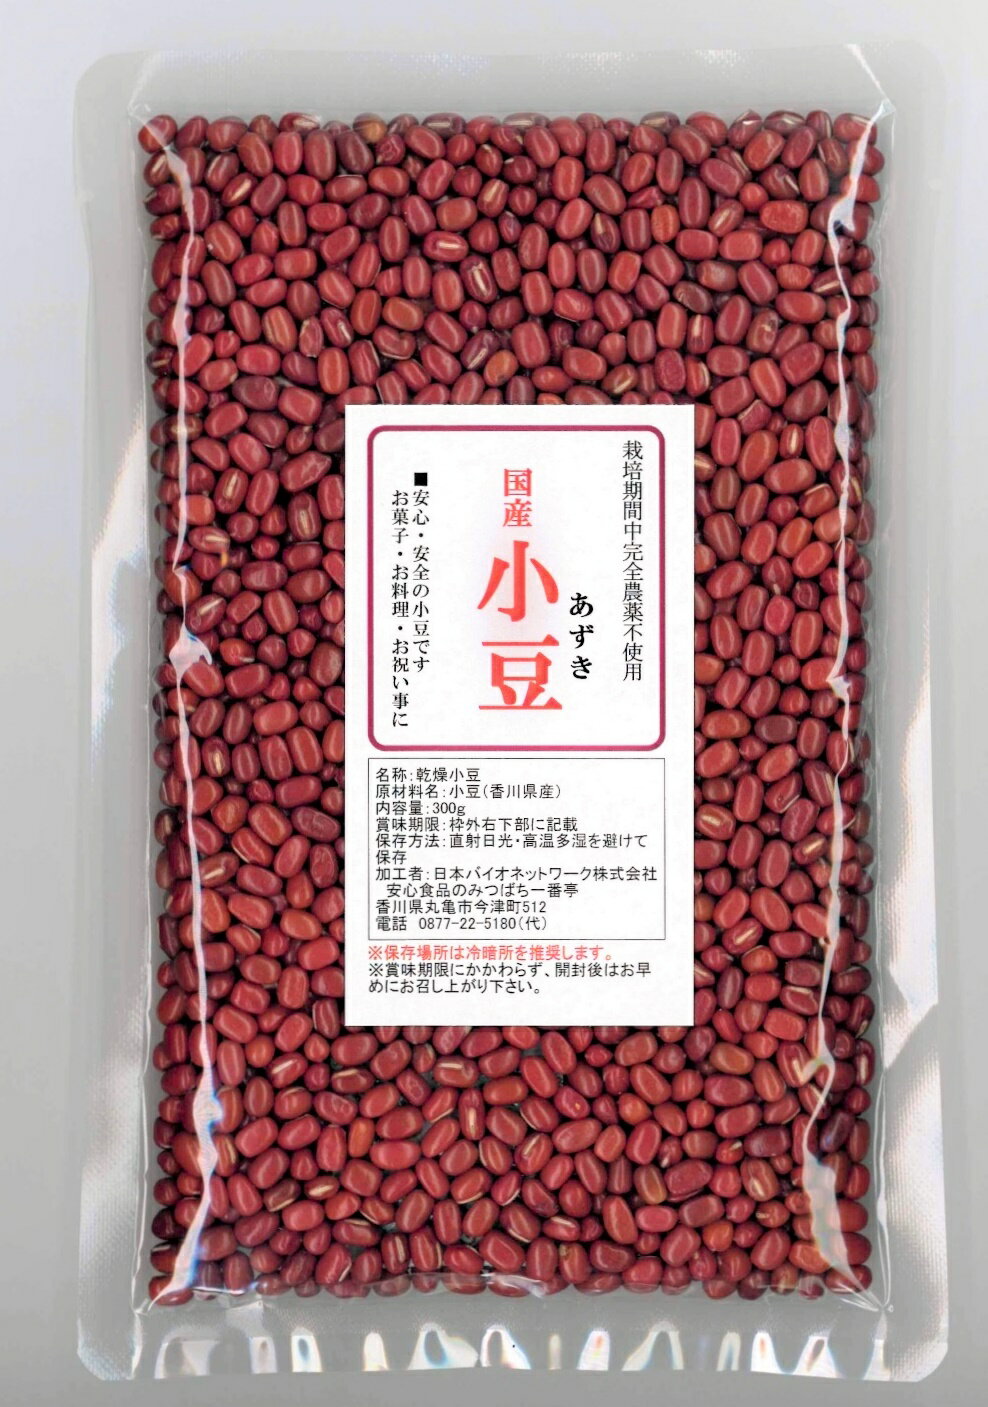 国産 小豆 300g栽培期間中農薬完全不使用で育...の商品画像